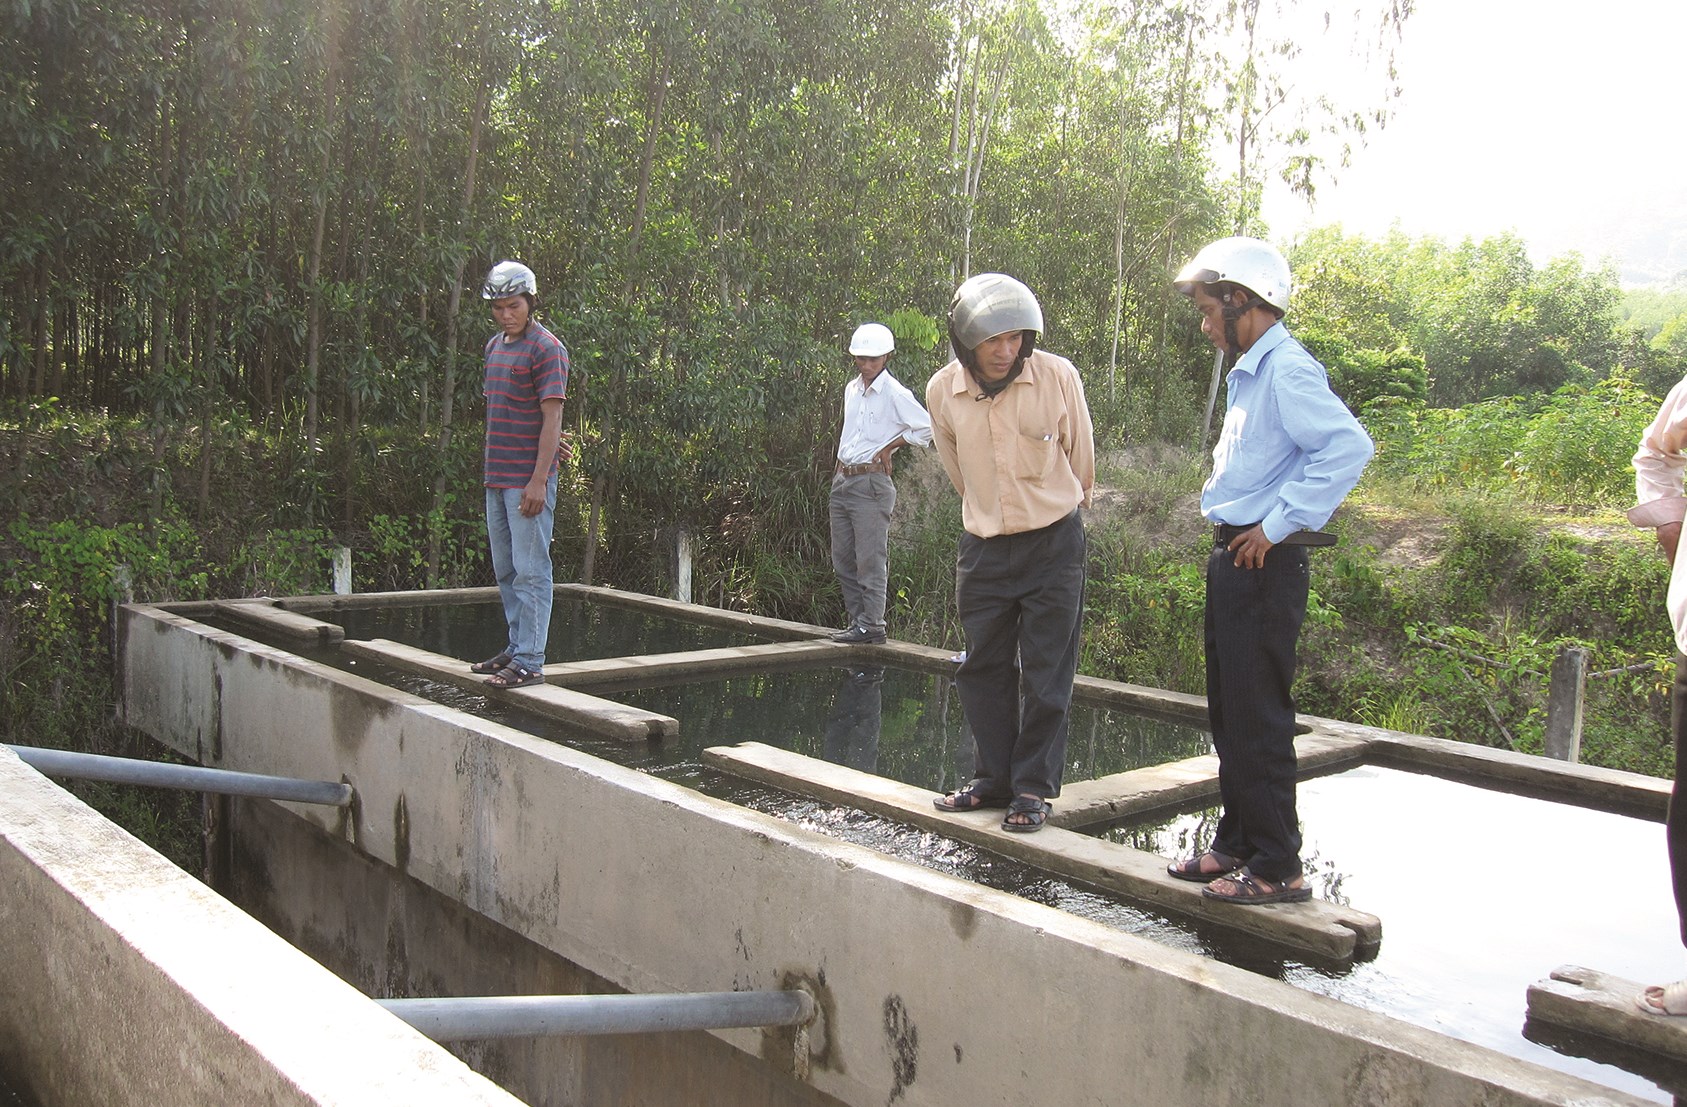 Đầu tư công trình nước sạch bằng hình thức xã hội hóa sẽ góp phần giải bài toán kinh phí và thiếu nước sạch cho người dân miền núi Phú Yên